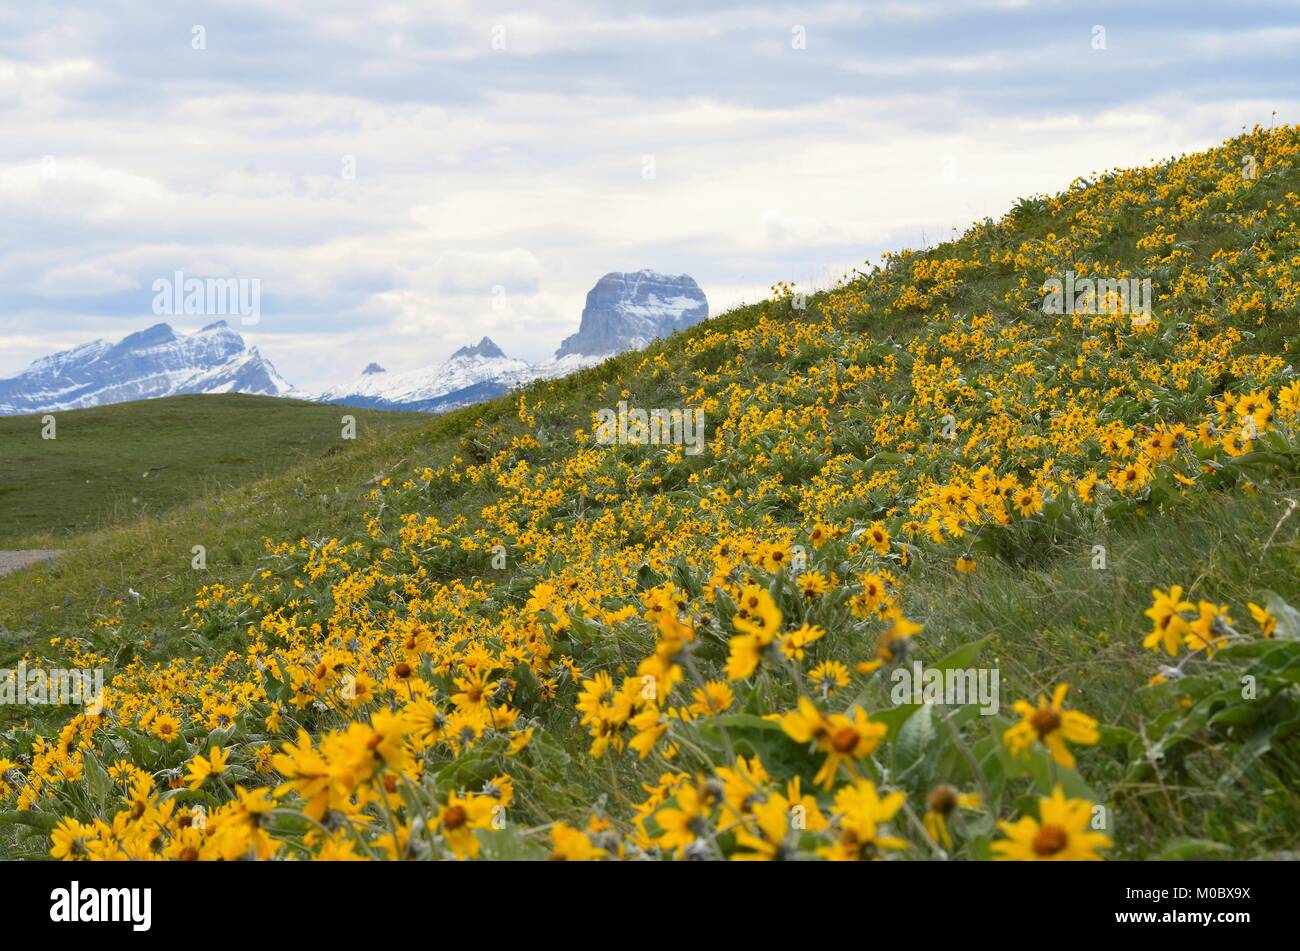 Chief Mountain, qui fait partie de la gamme des montagnes Rocheuses, est la toile de fond pour une magnifique colline couverte de fleurs marguerite jaune vif Banque D'Images